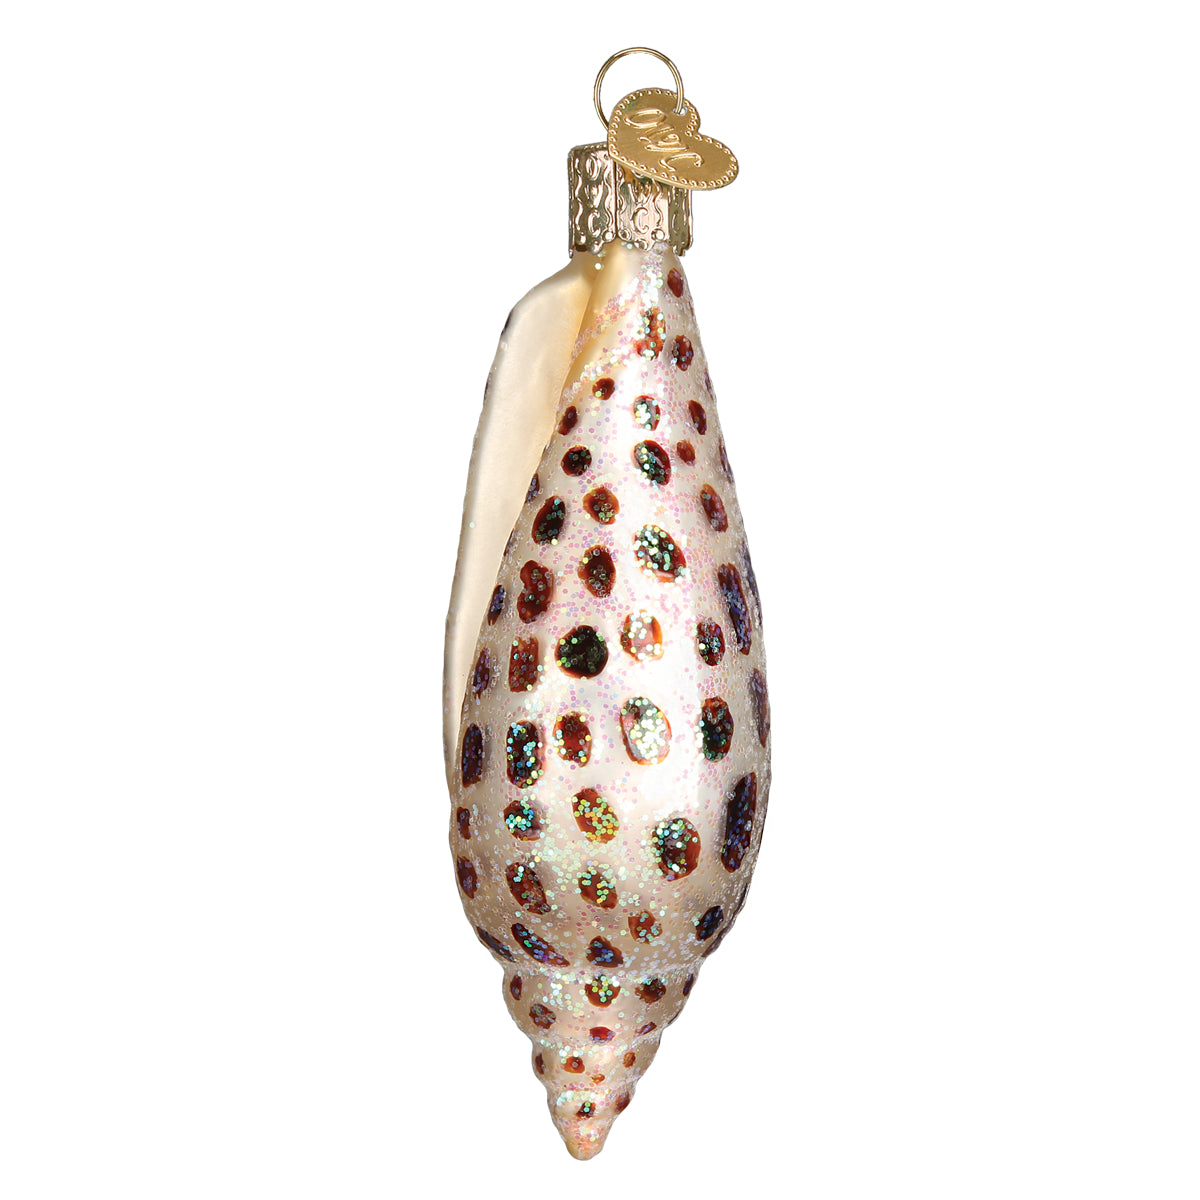 Junonia Shell Ornament